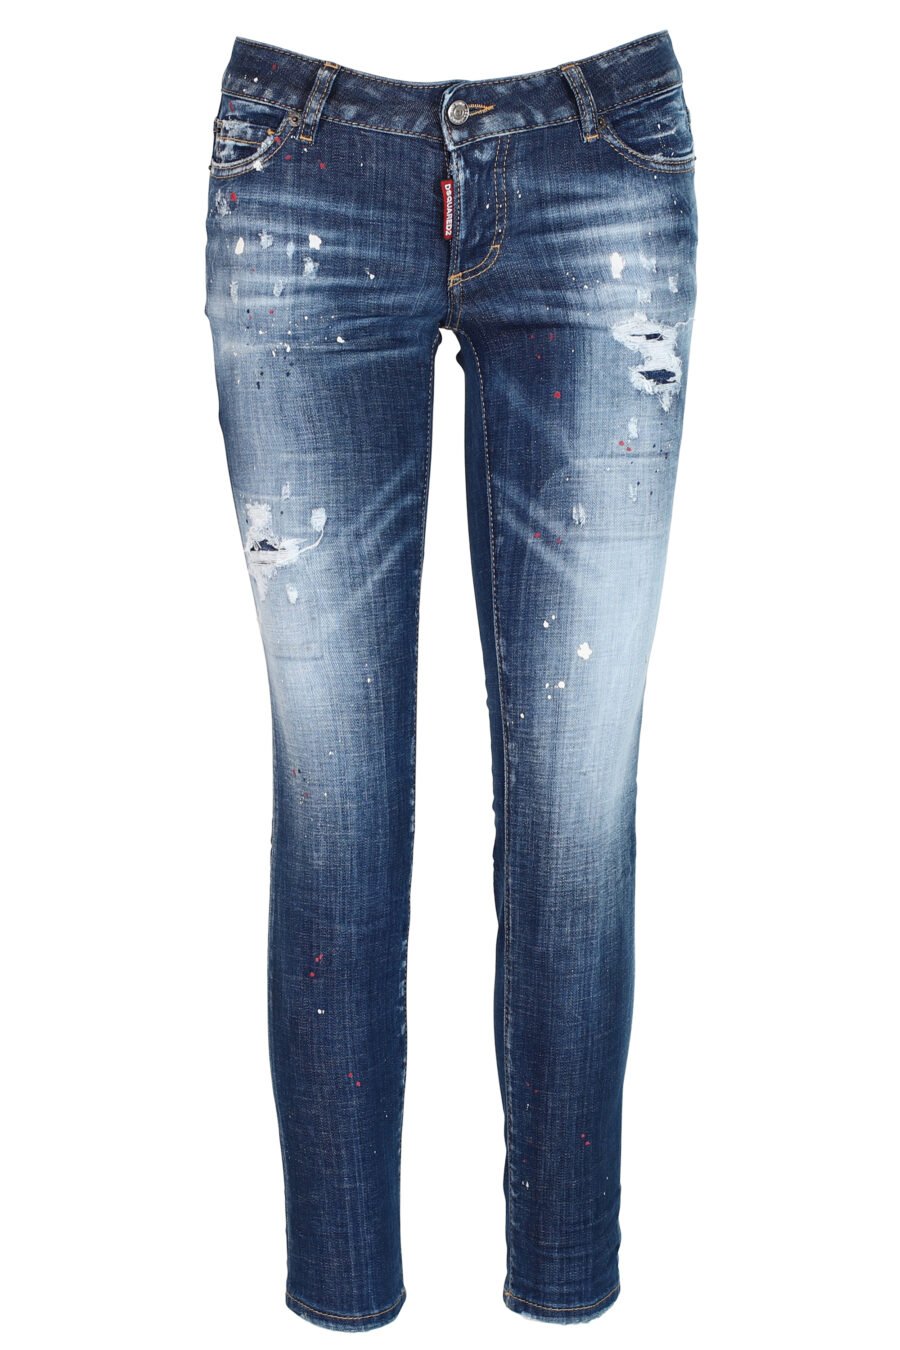 Jeans "Jennifer Jean" bleu avec éclaboussures de peinture et effet délavé - 8052134937259